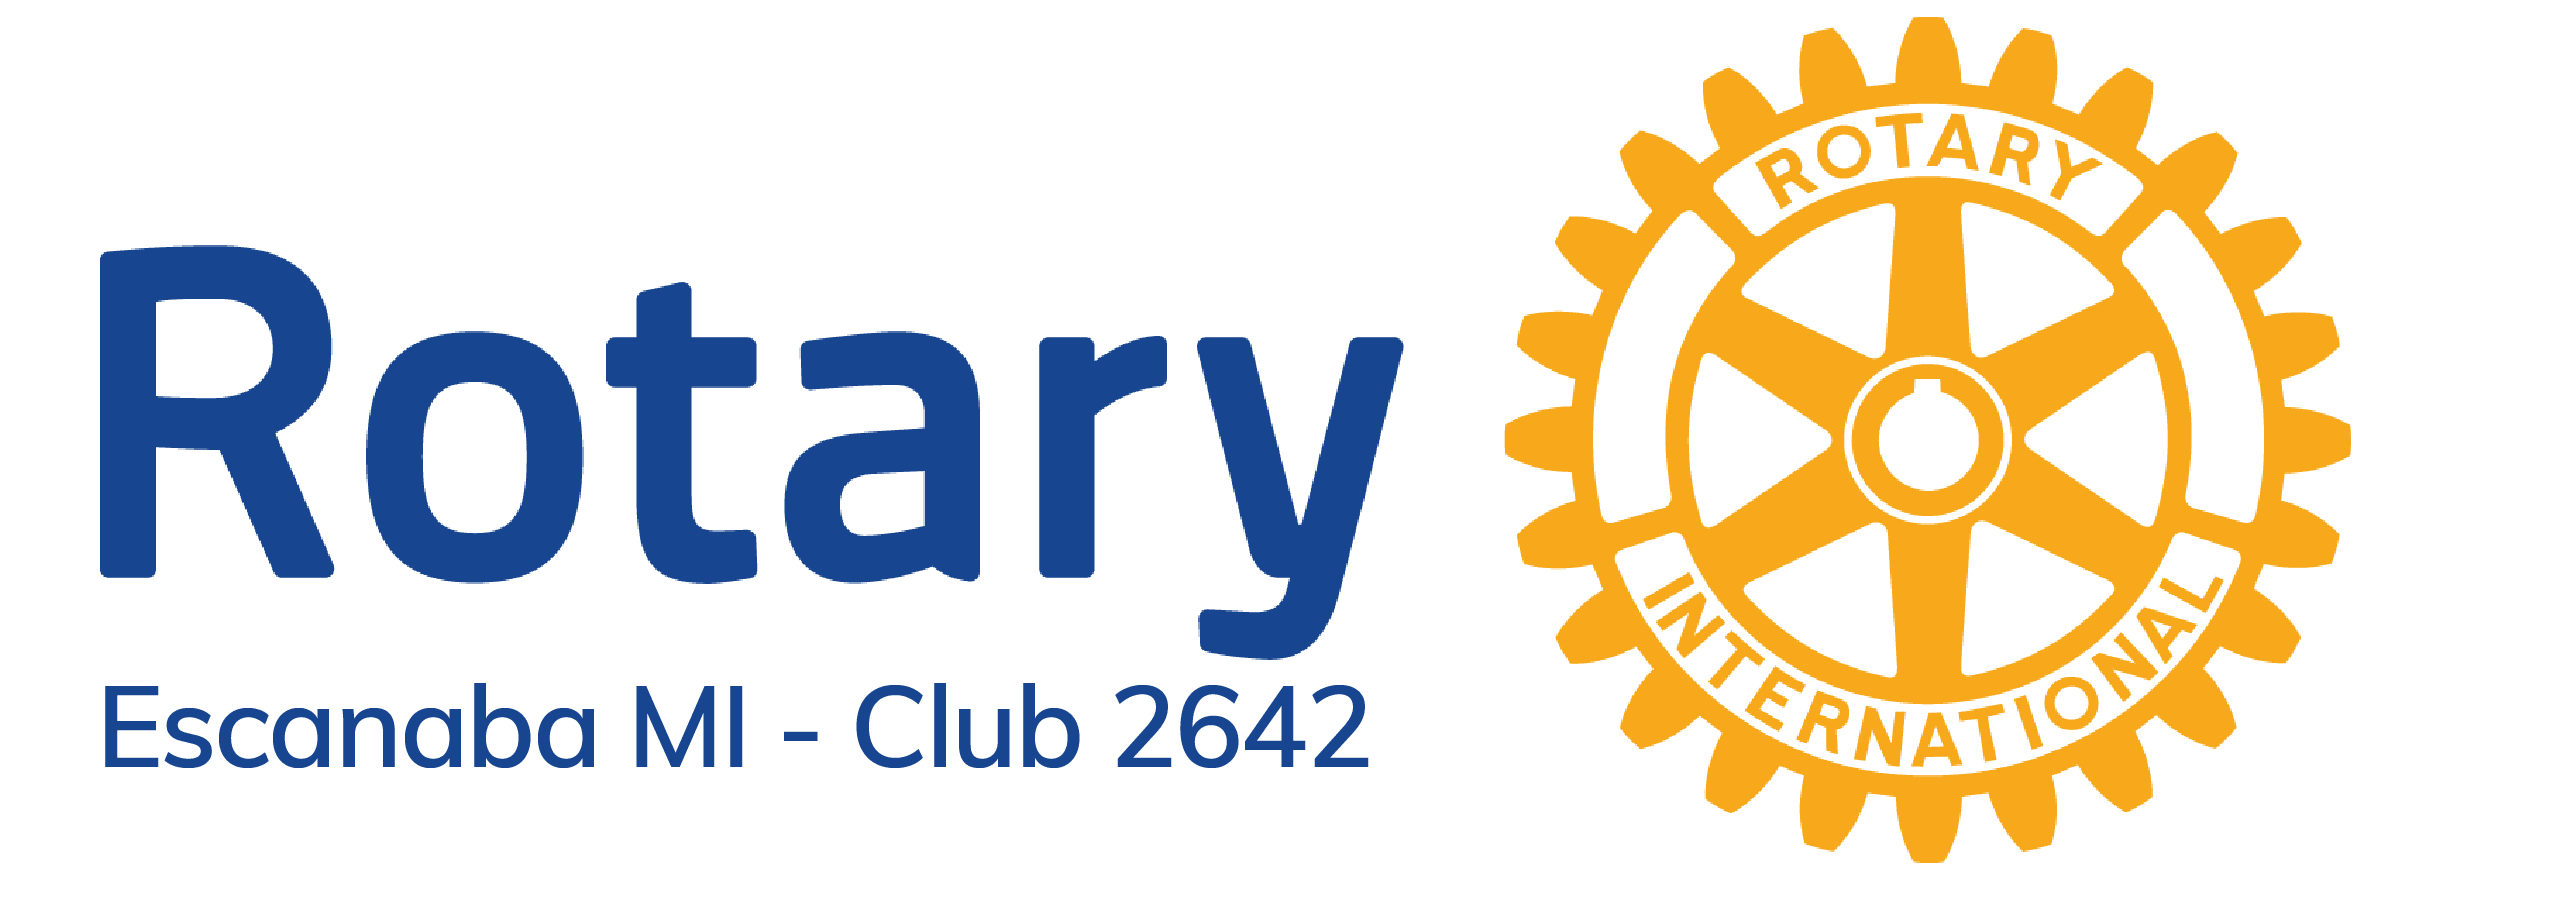 Escanaba-Rotary-Club-01